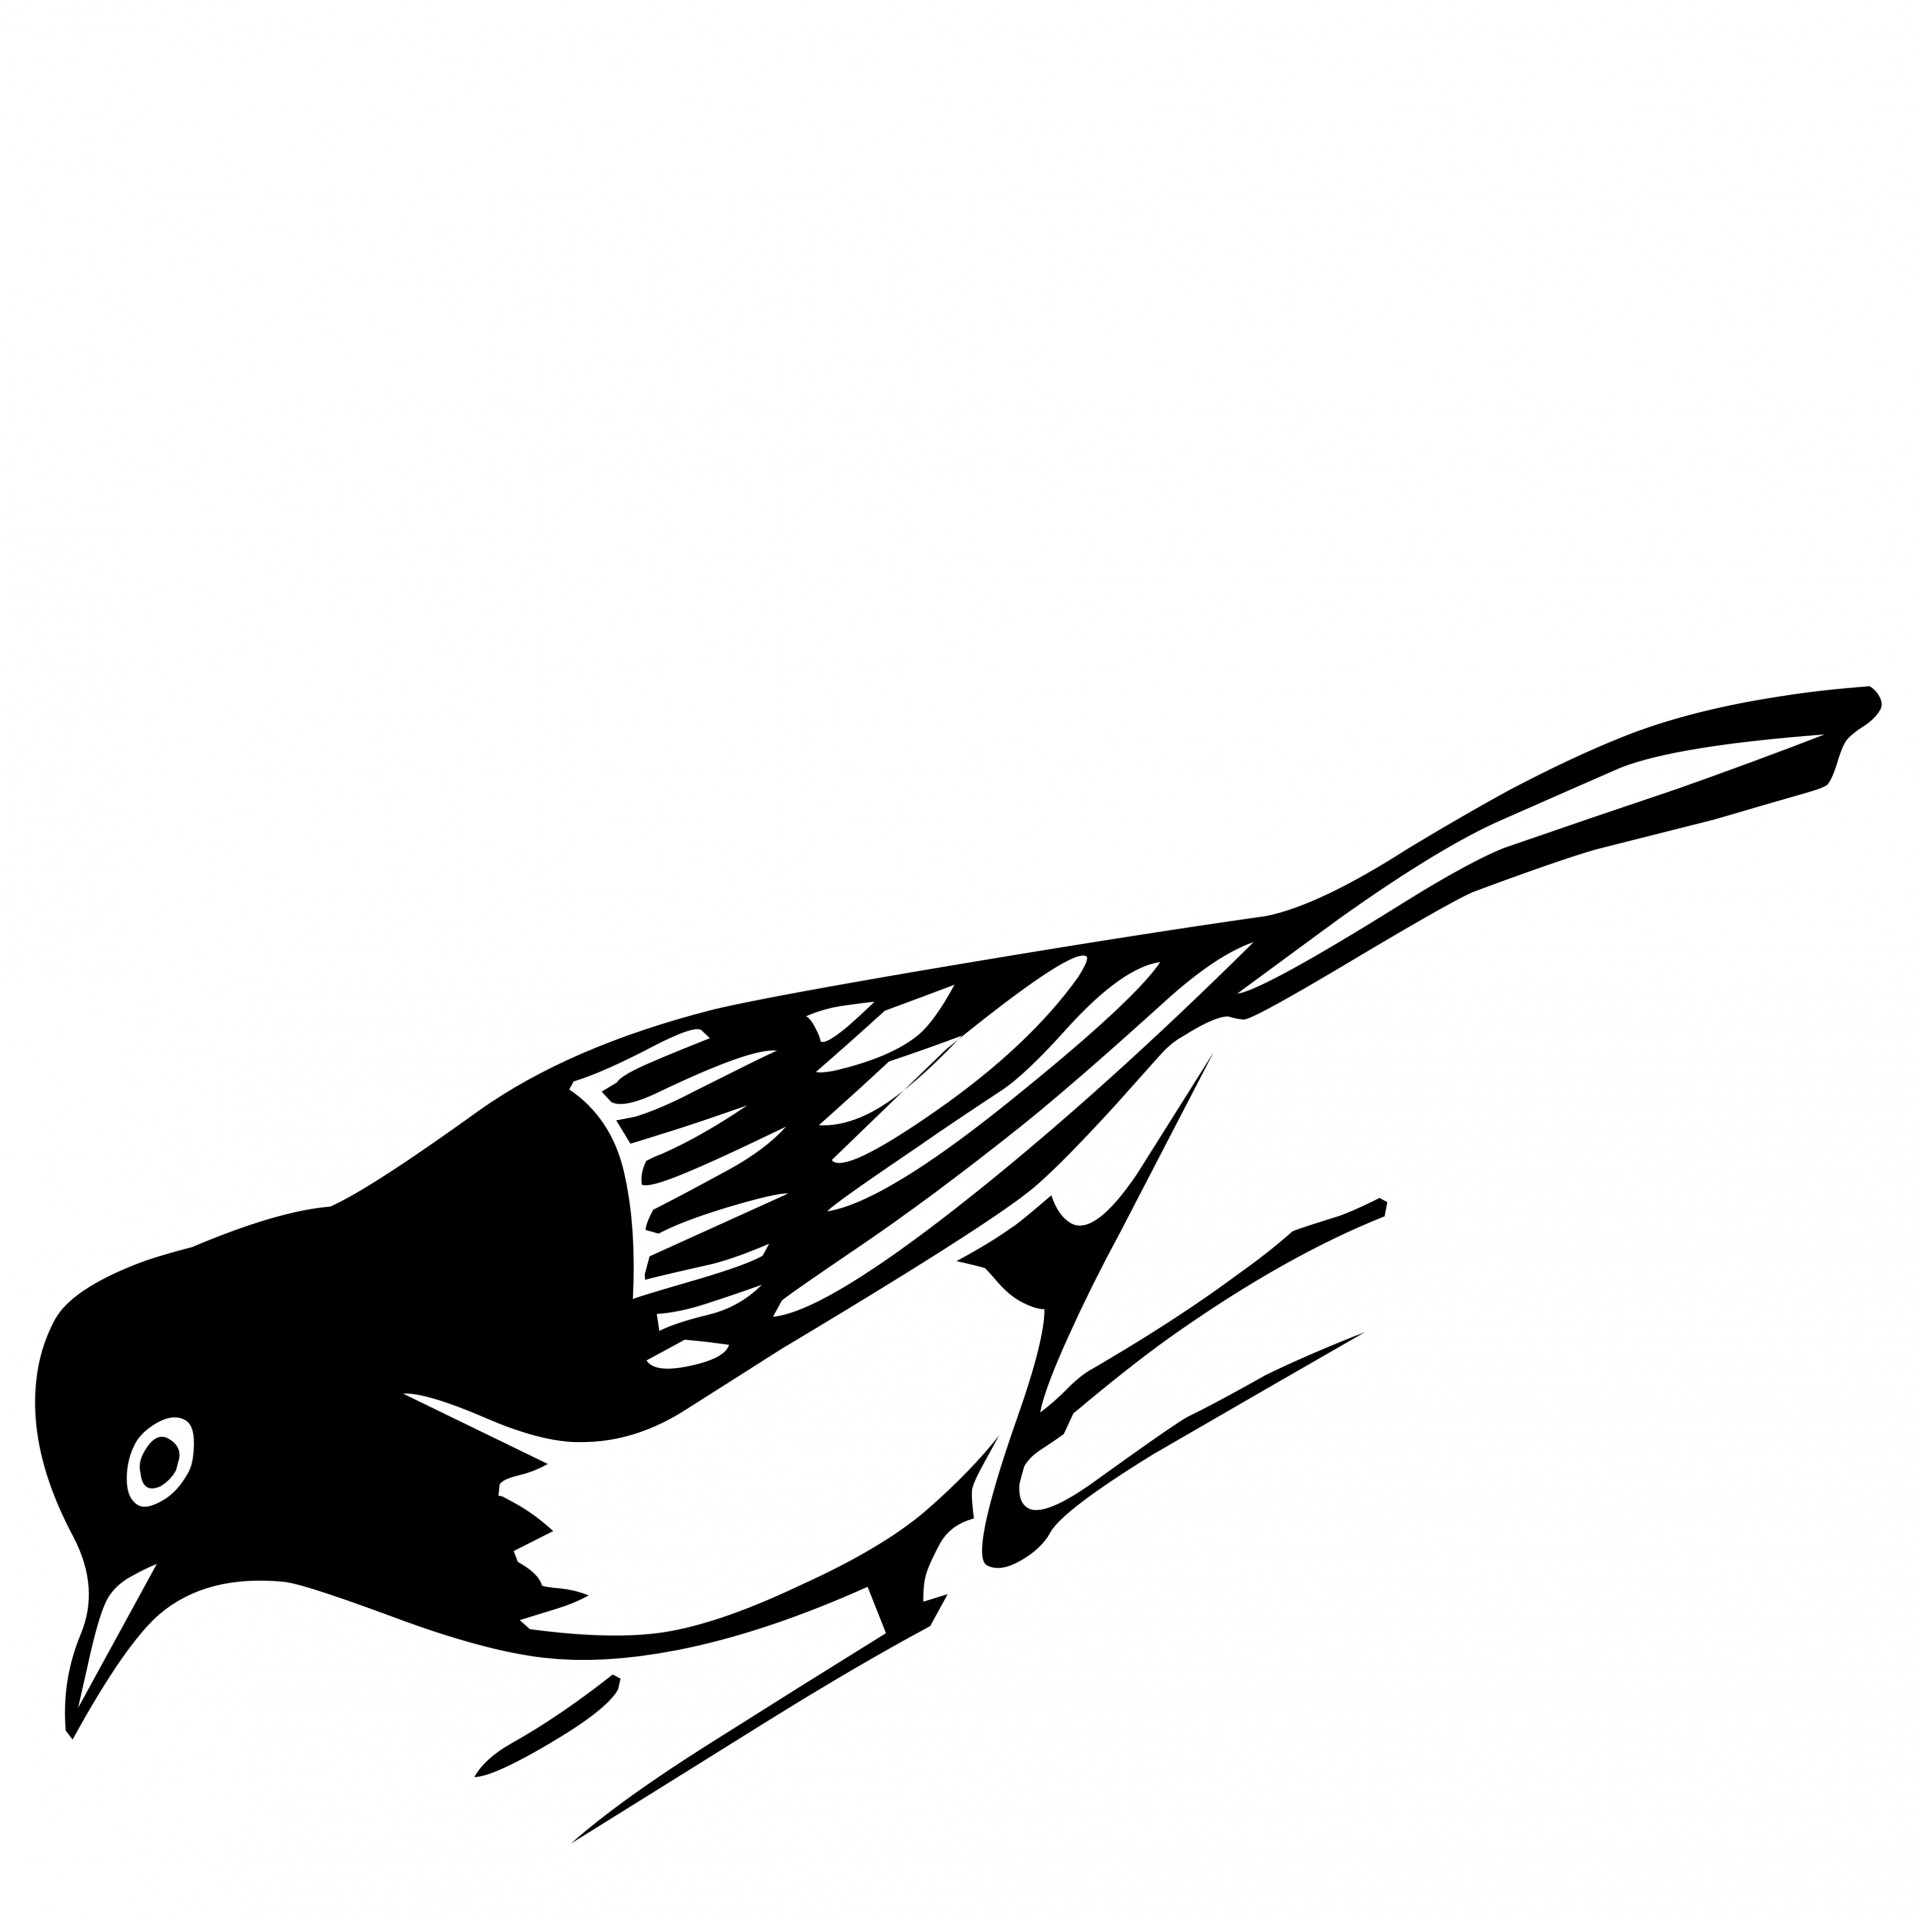 Pasăre negru